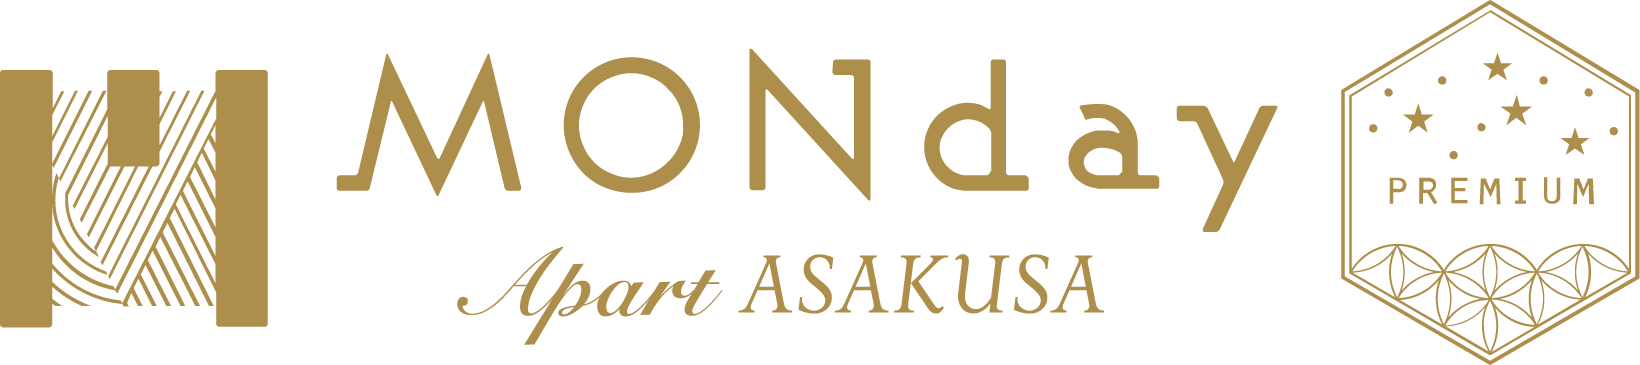 MONday Apart Premium ASAKUSA